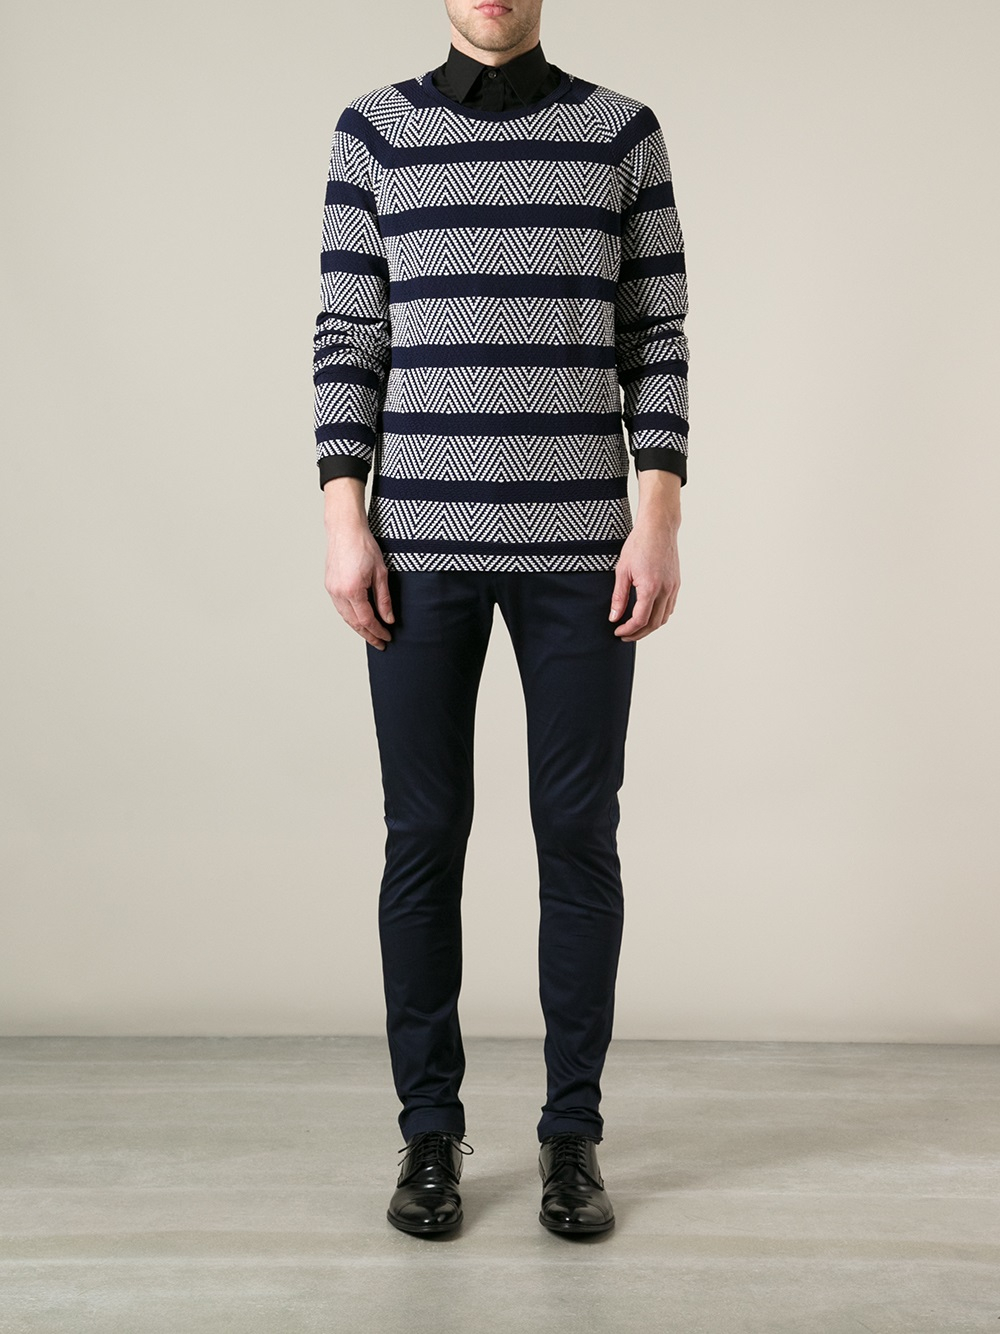 Lyst - Giorgio Armani Jacquard Striped Sweater in Blue for Men